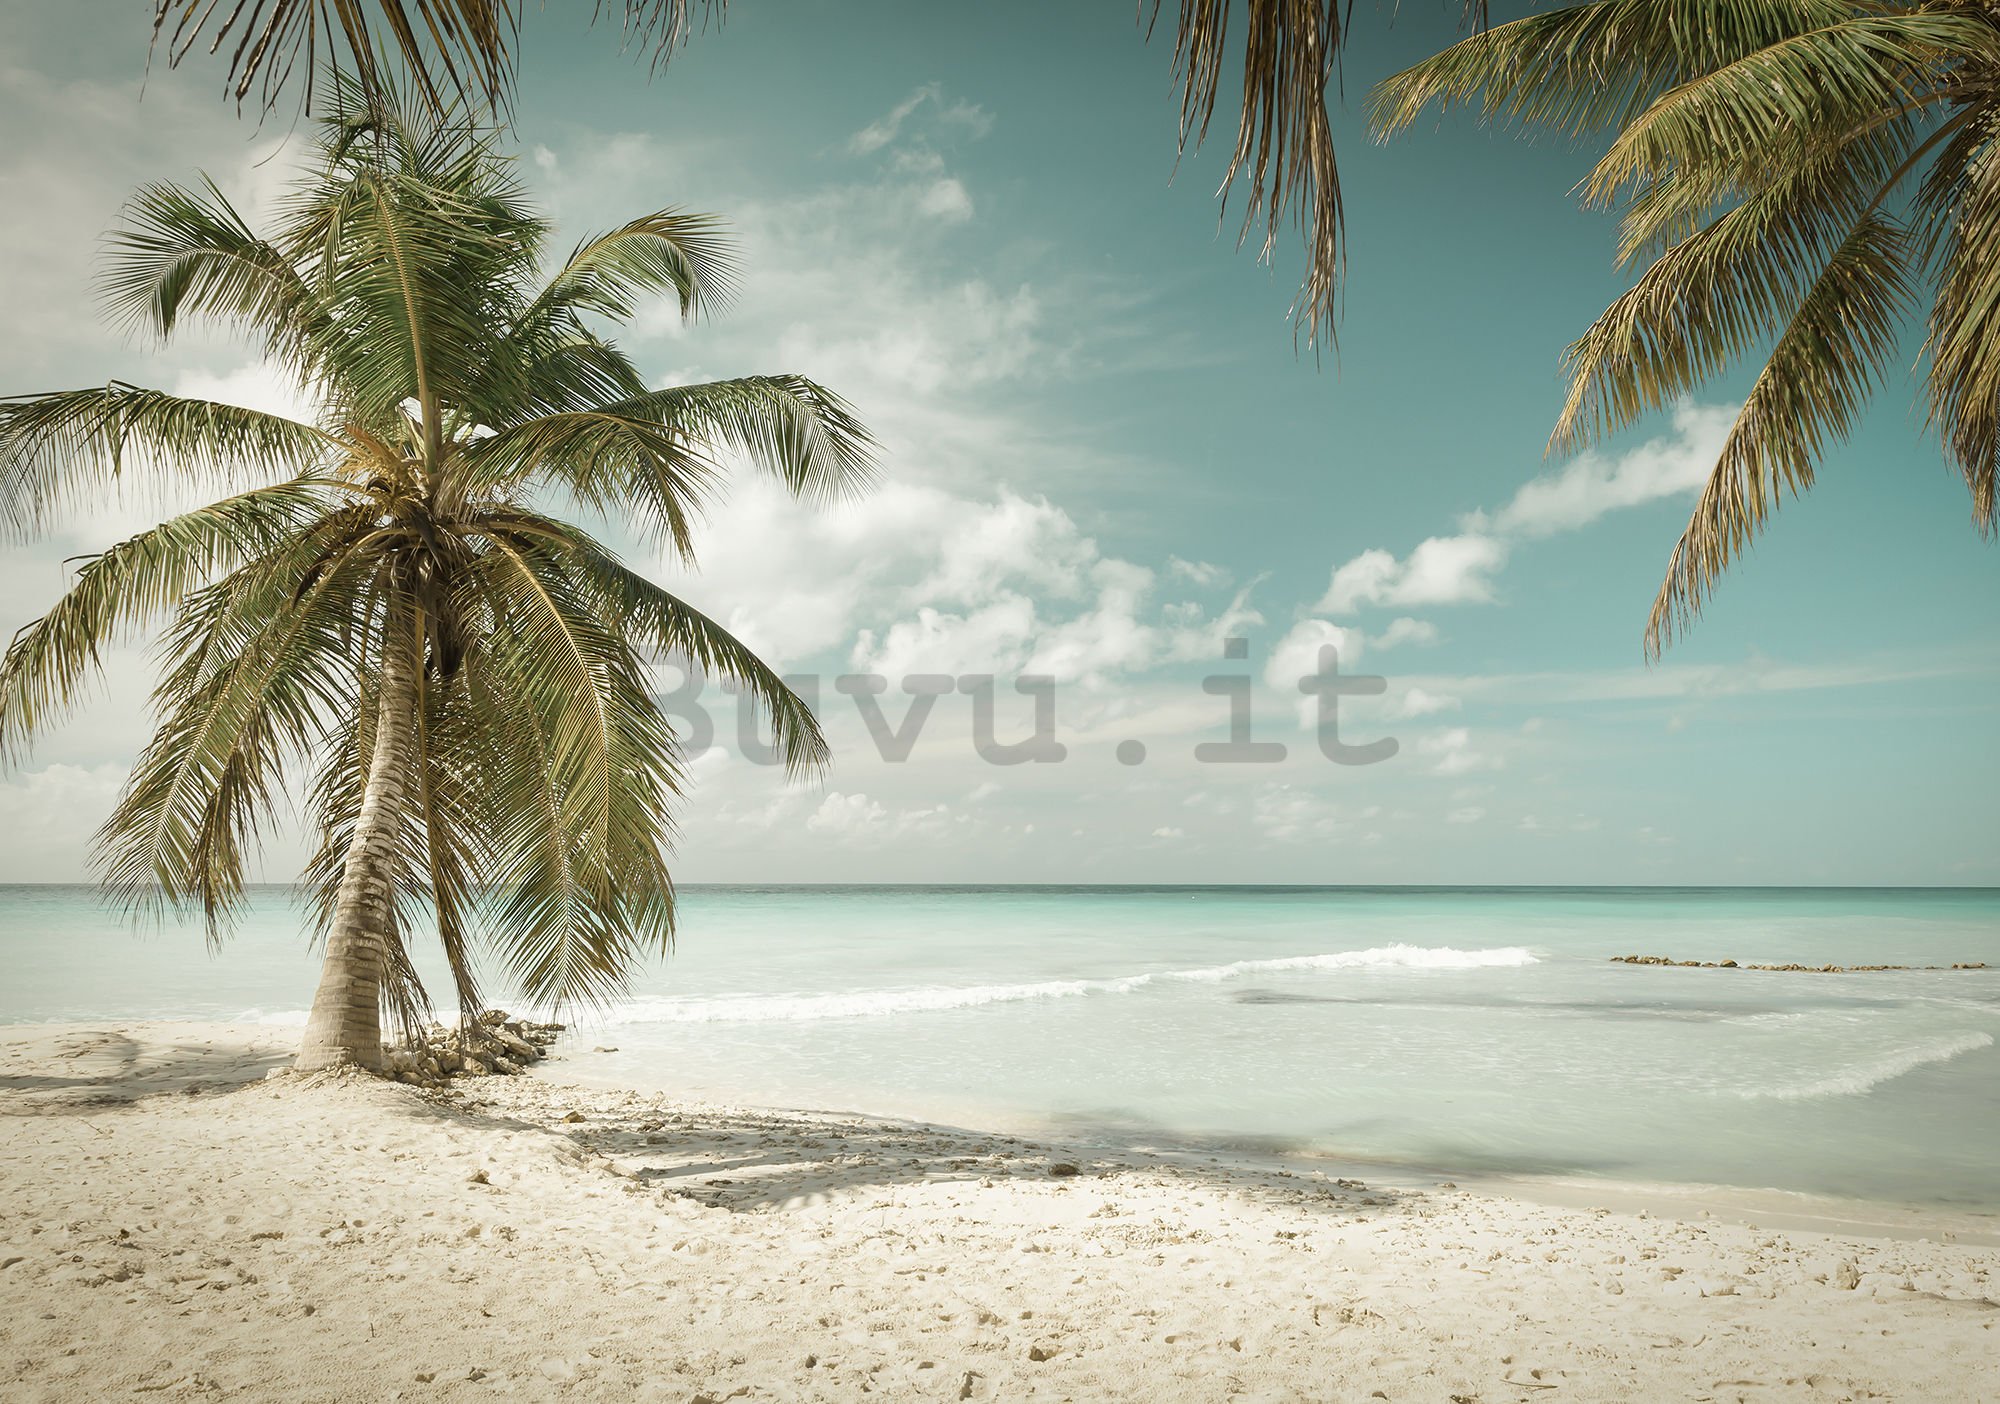 Fotomurale in TNT: Le palme sul mare - 104x152,5 cm